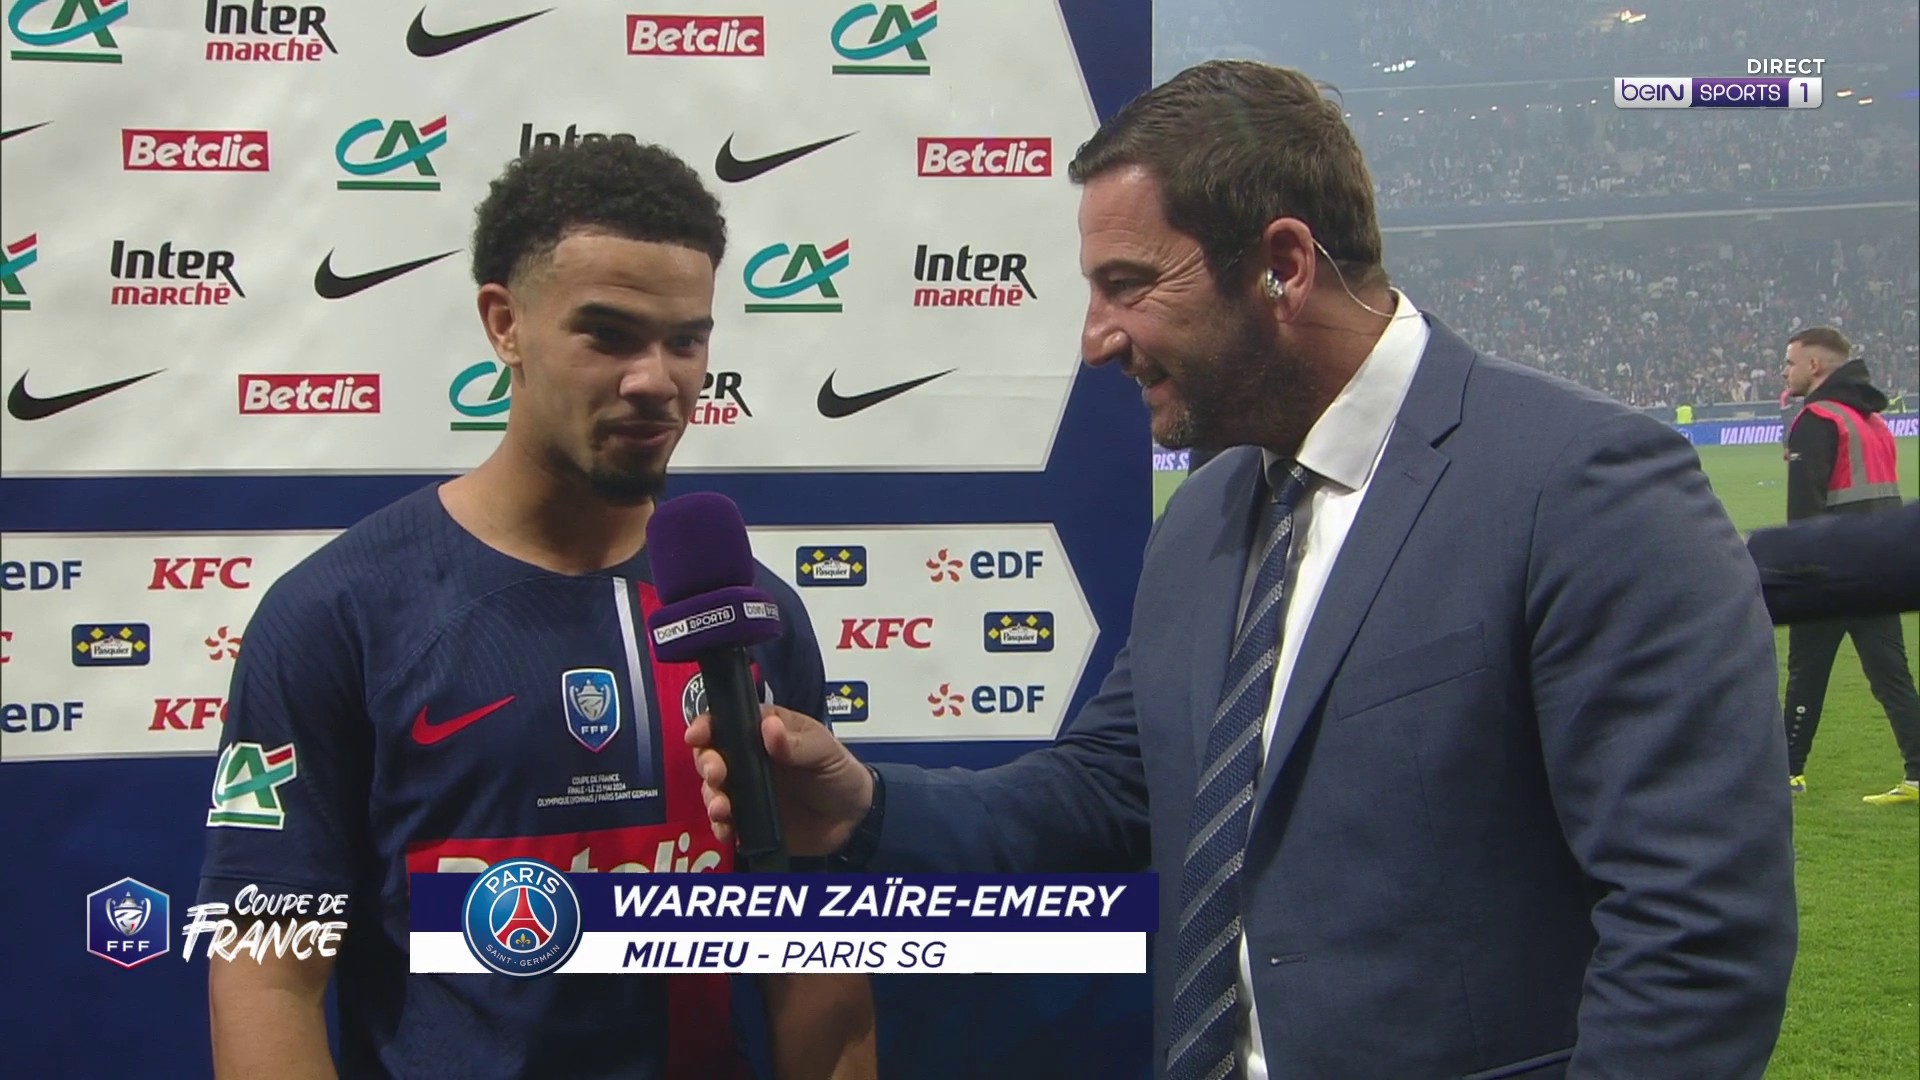 Coupe de France - Zaïre-Emery : "J'espère que l'année prochaine sera aussi belle"